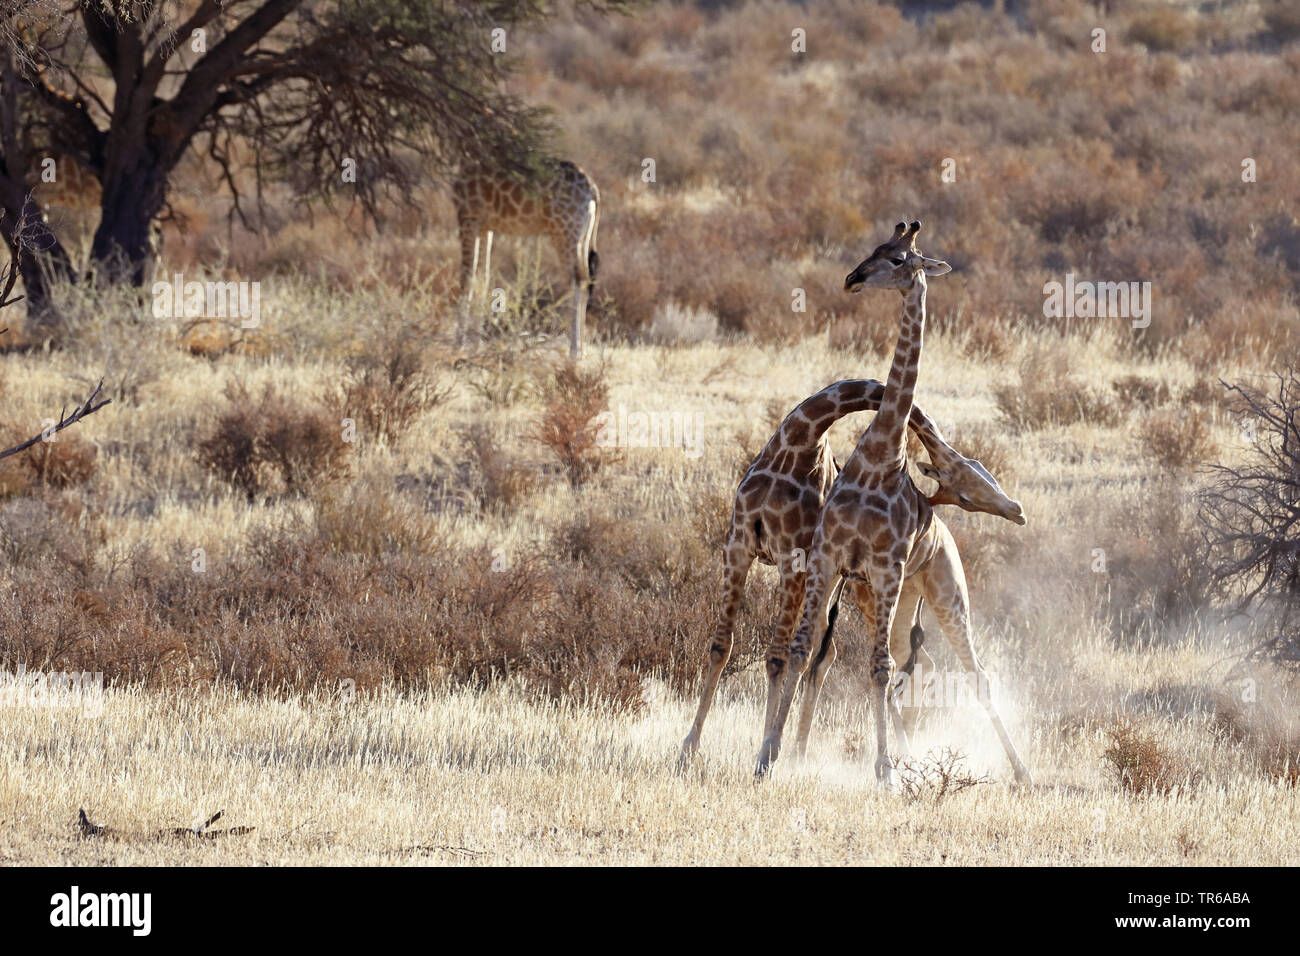 Girafe (Giraffa camelopardalis), territoriaux lutte entre deux hommes girafes dans la savane, Afrique du Sud, Kgalagadi Transfrontier National Park Banque D'Images